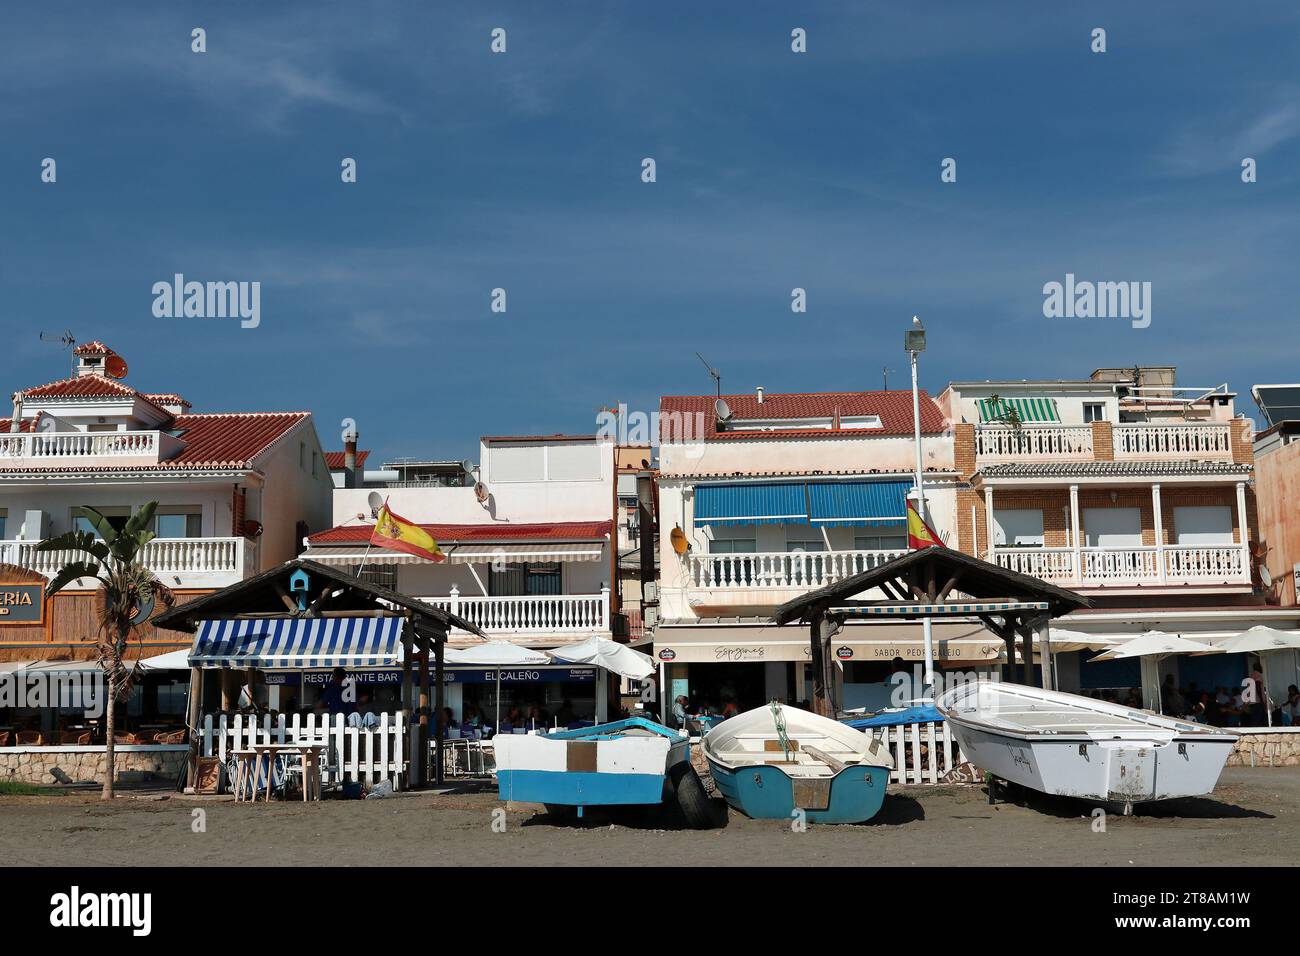 Village de pêcheurs de Pedregalejo, Malaga : les bateaux de pêche sont assis sur le sable en face de la promenade du front de mer avec ses chiringuitos et ses étals de barbecue de fruits de mer Banque D'Images